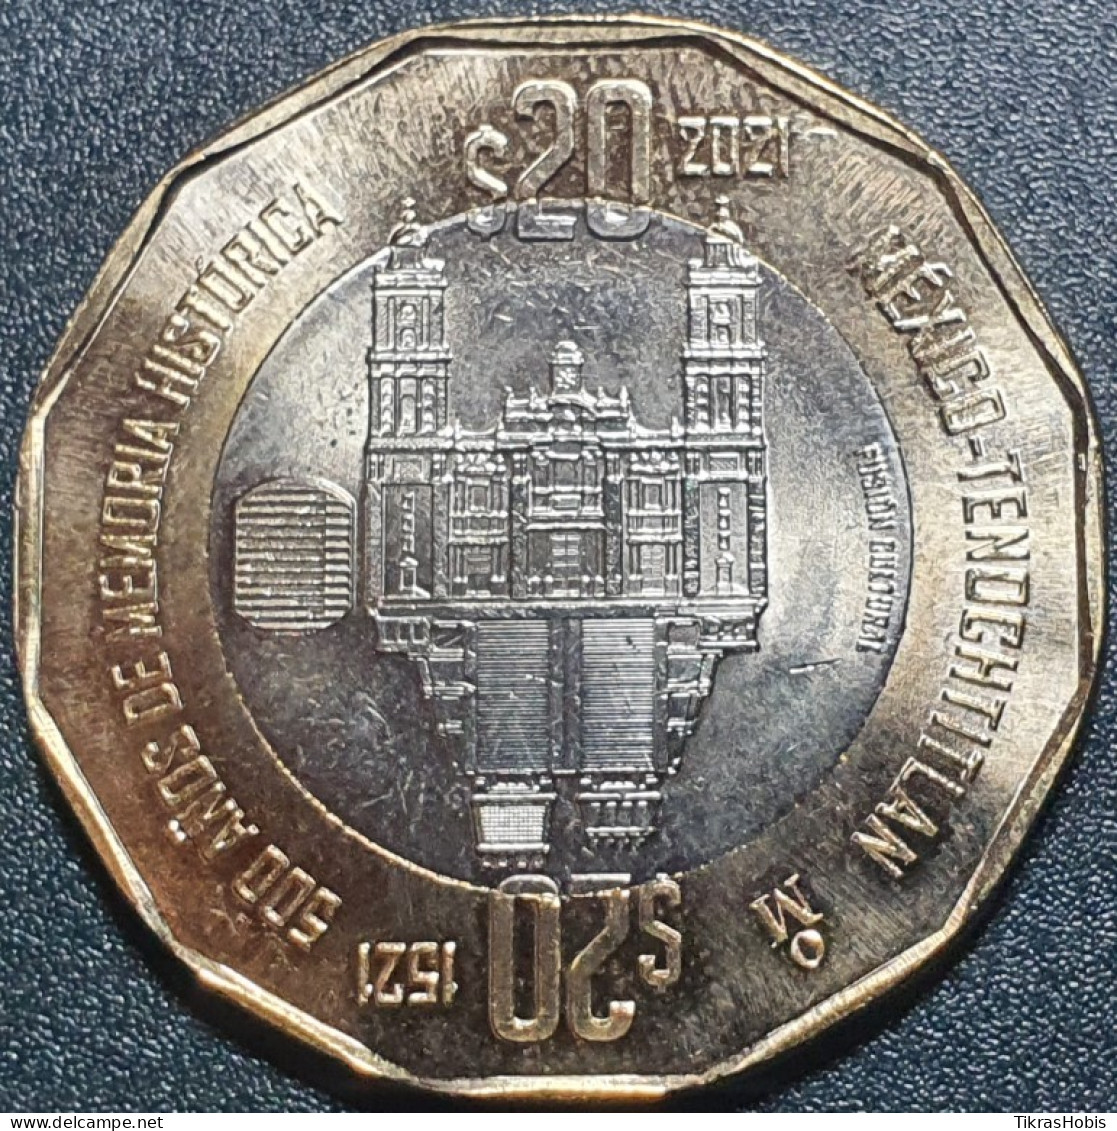 Mexico 20 Pesos, 2021 Tenochtitlan Collapse 500 UC105 - México